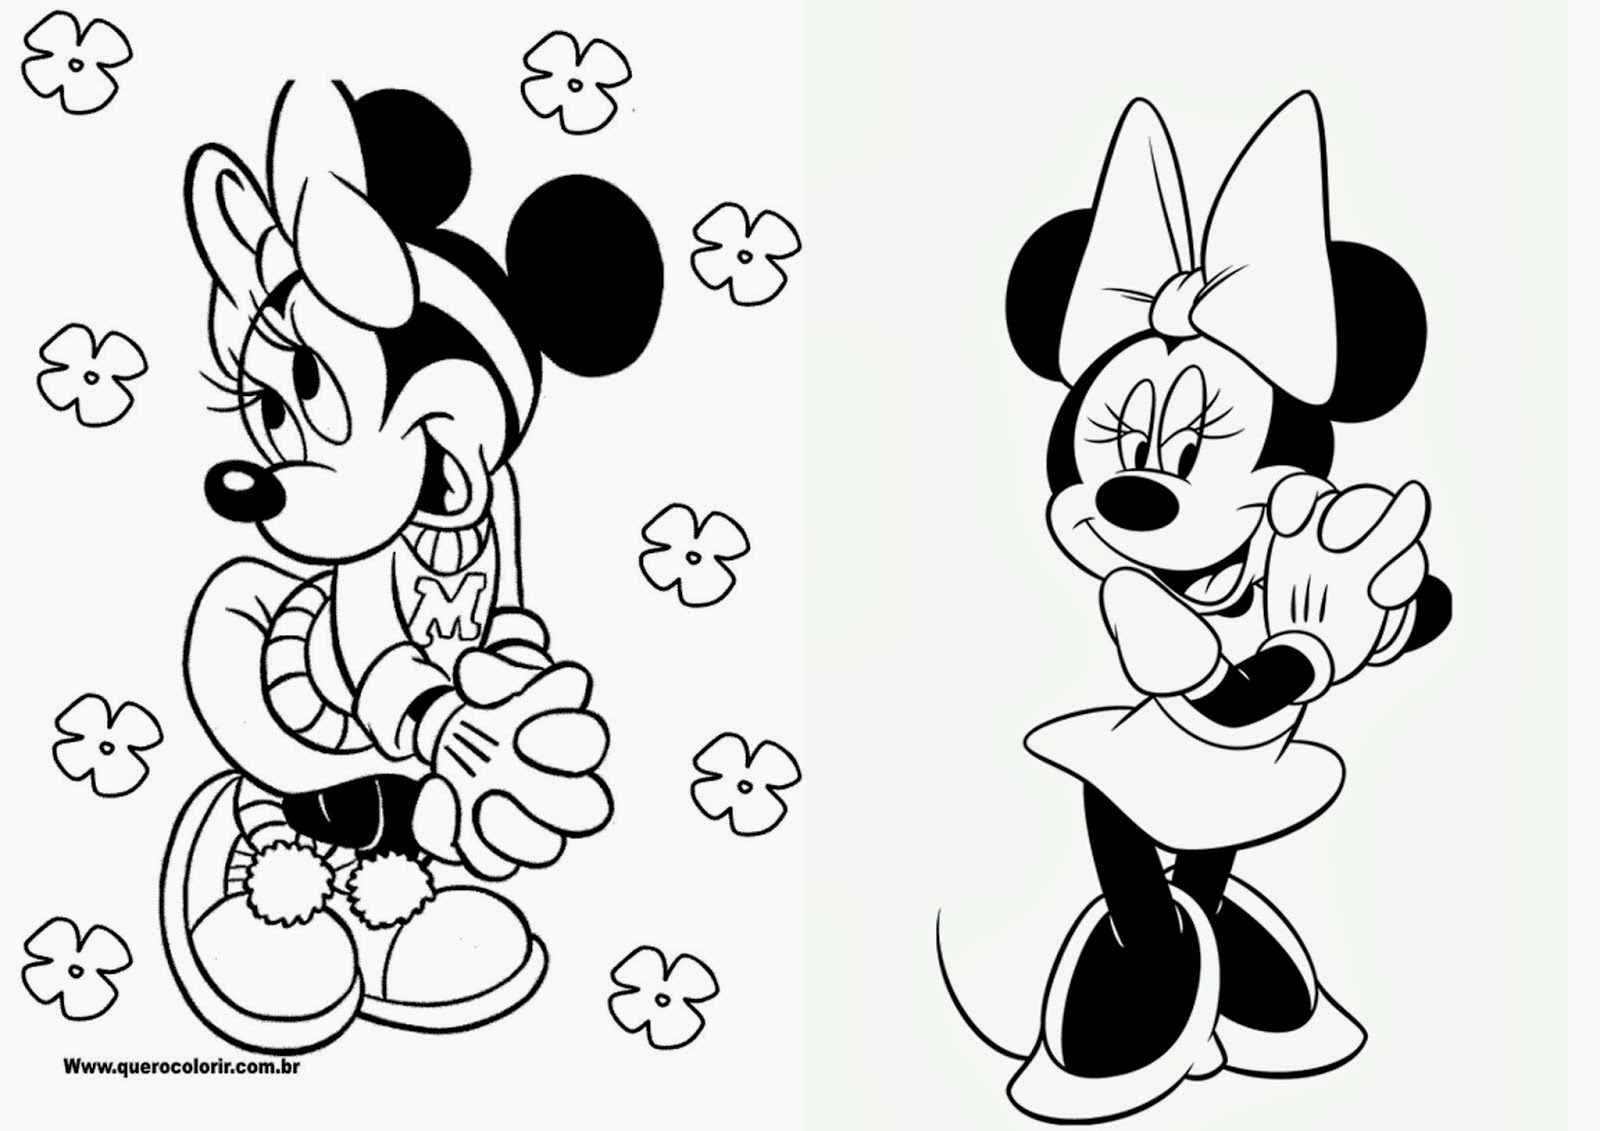 Featured image of post Cumplea os Dibujos Para Colorear Mickey Mouse Mickey mouse es un personaje animado ficticio de la conocida compa a disney que tiene caracter sticas similares a un rat n